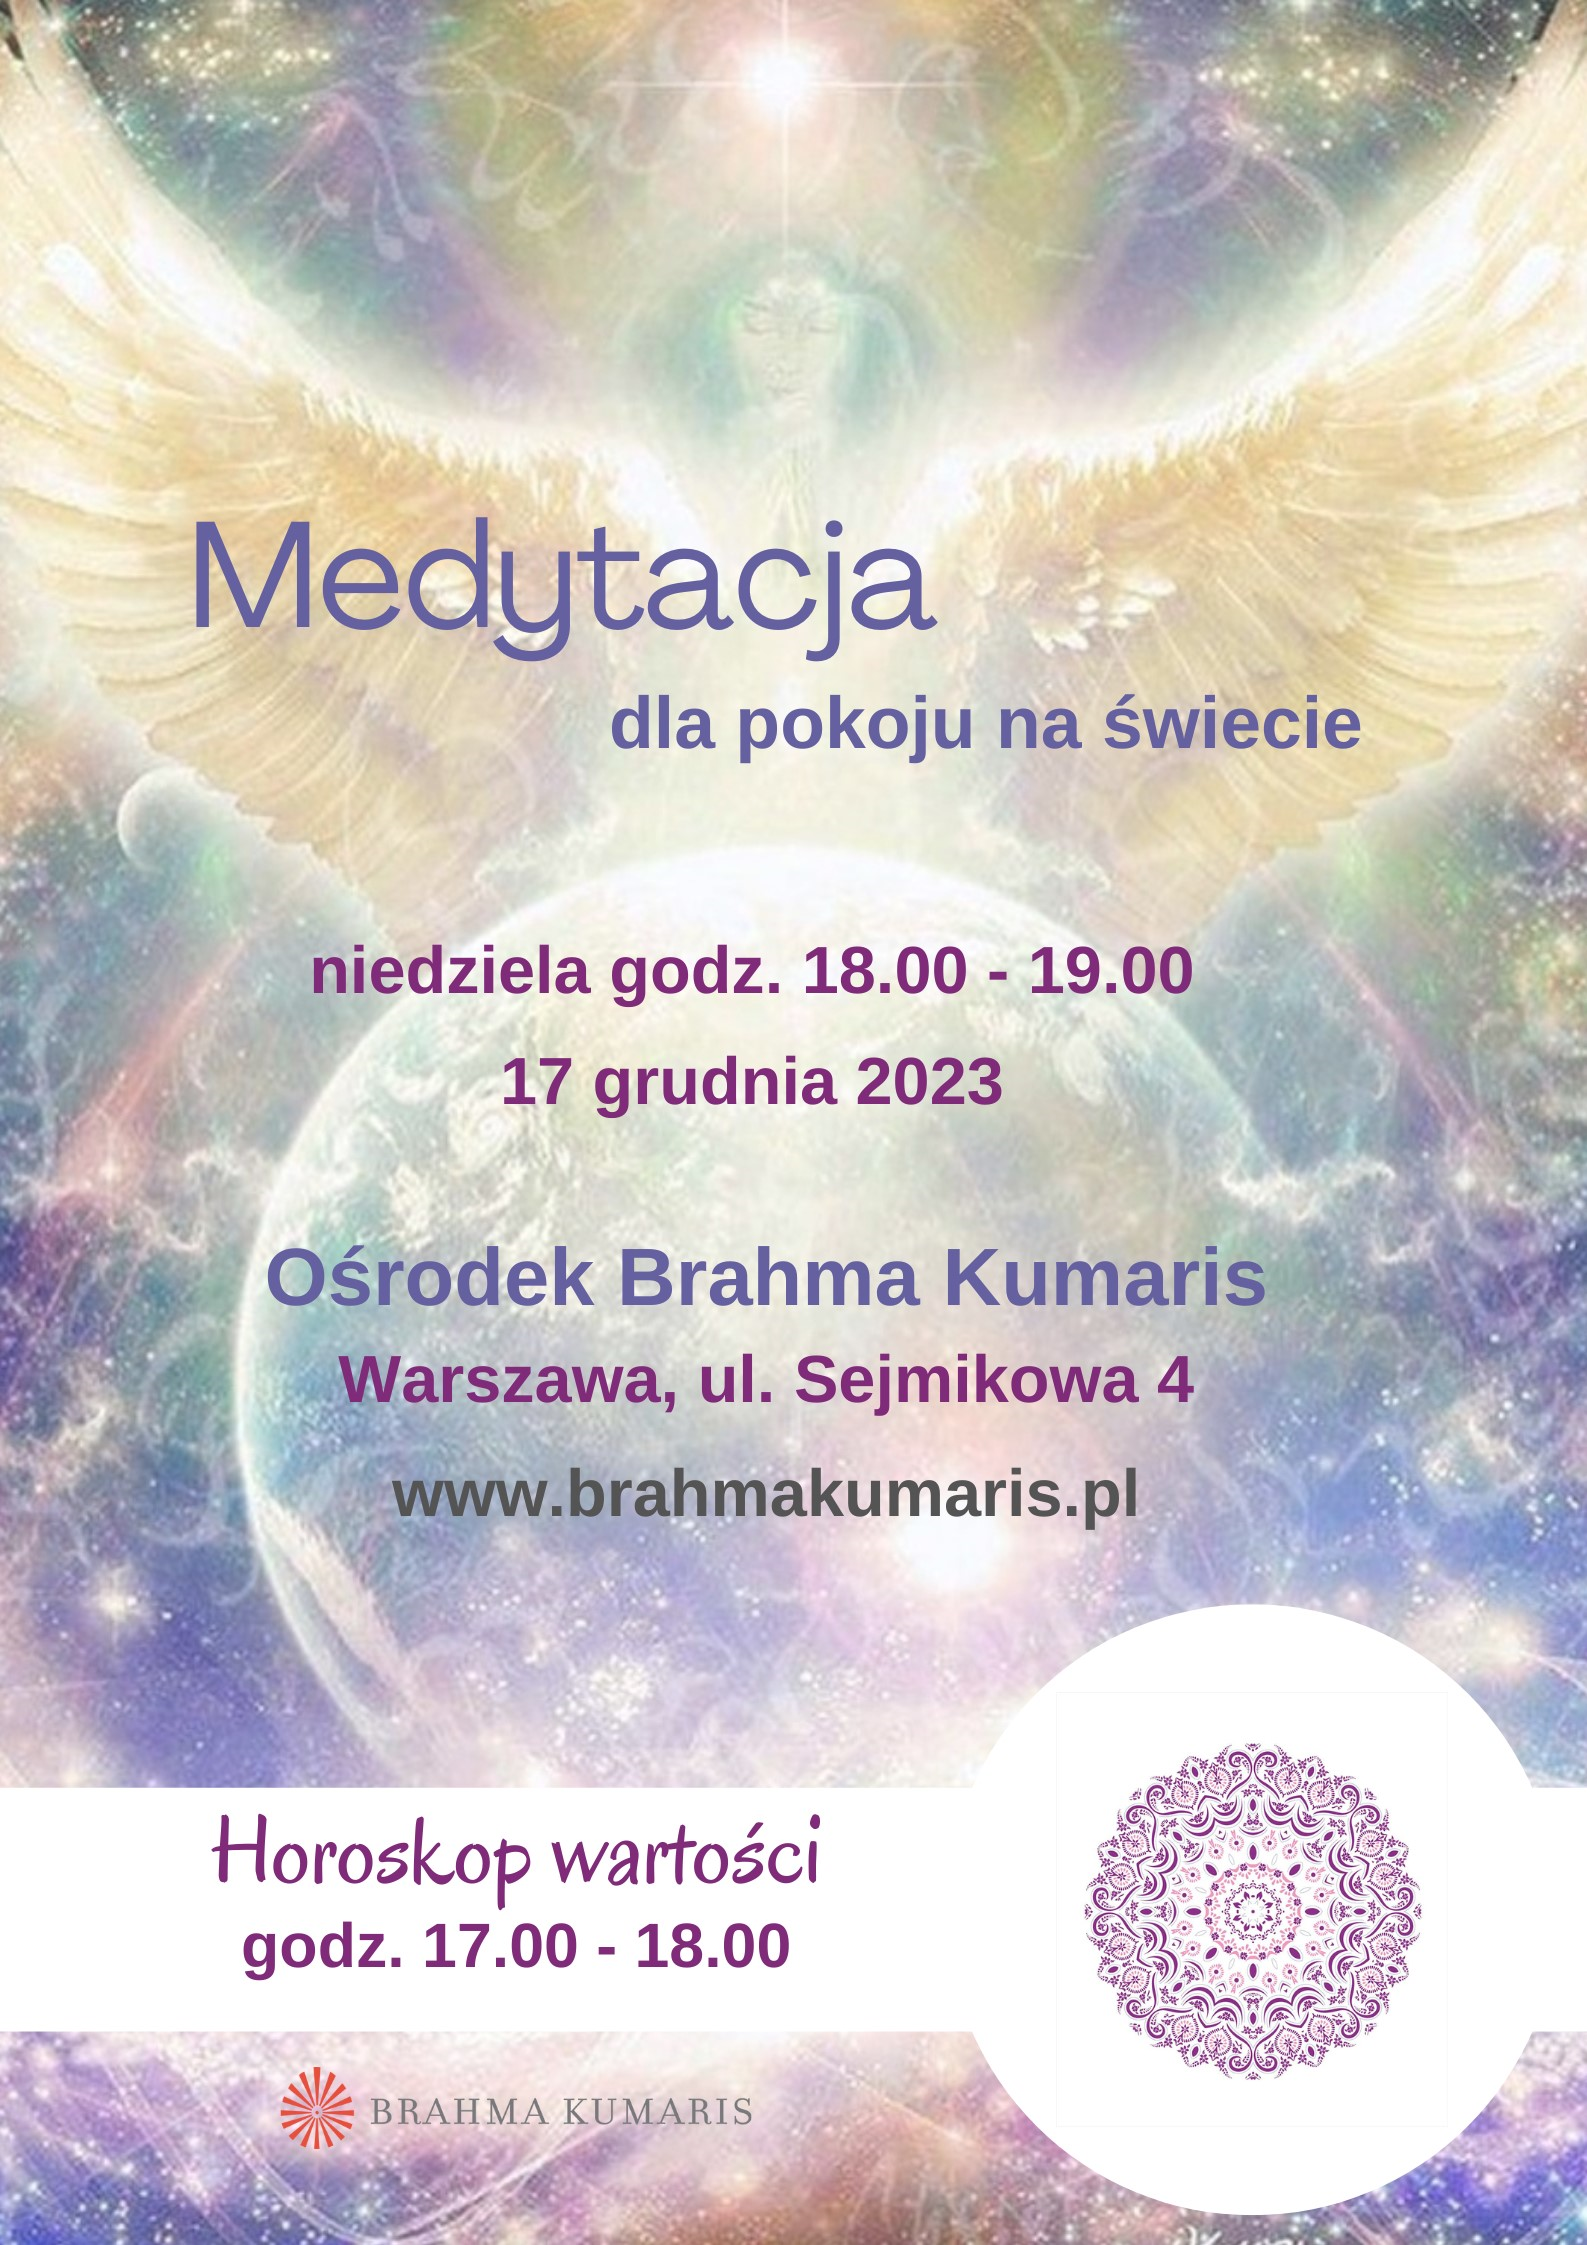 Medytacja dla pokoju na świecie w Warszawie @ Ośrodek Brahma Kumaris w Warszawie